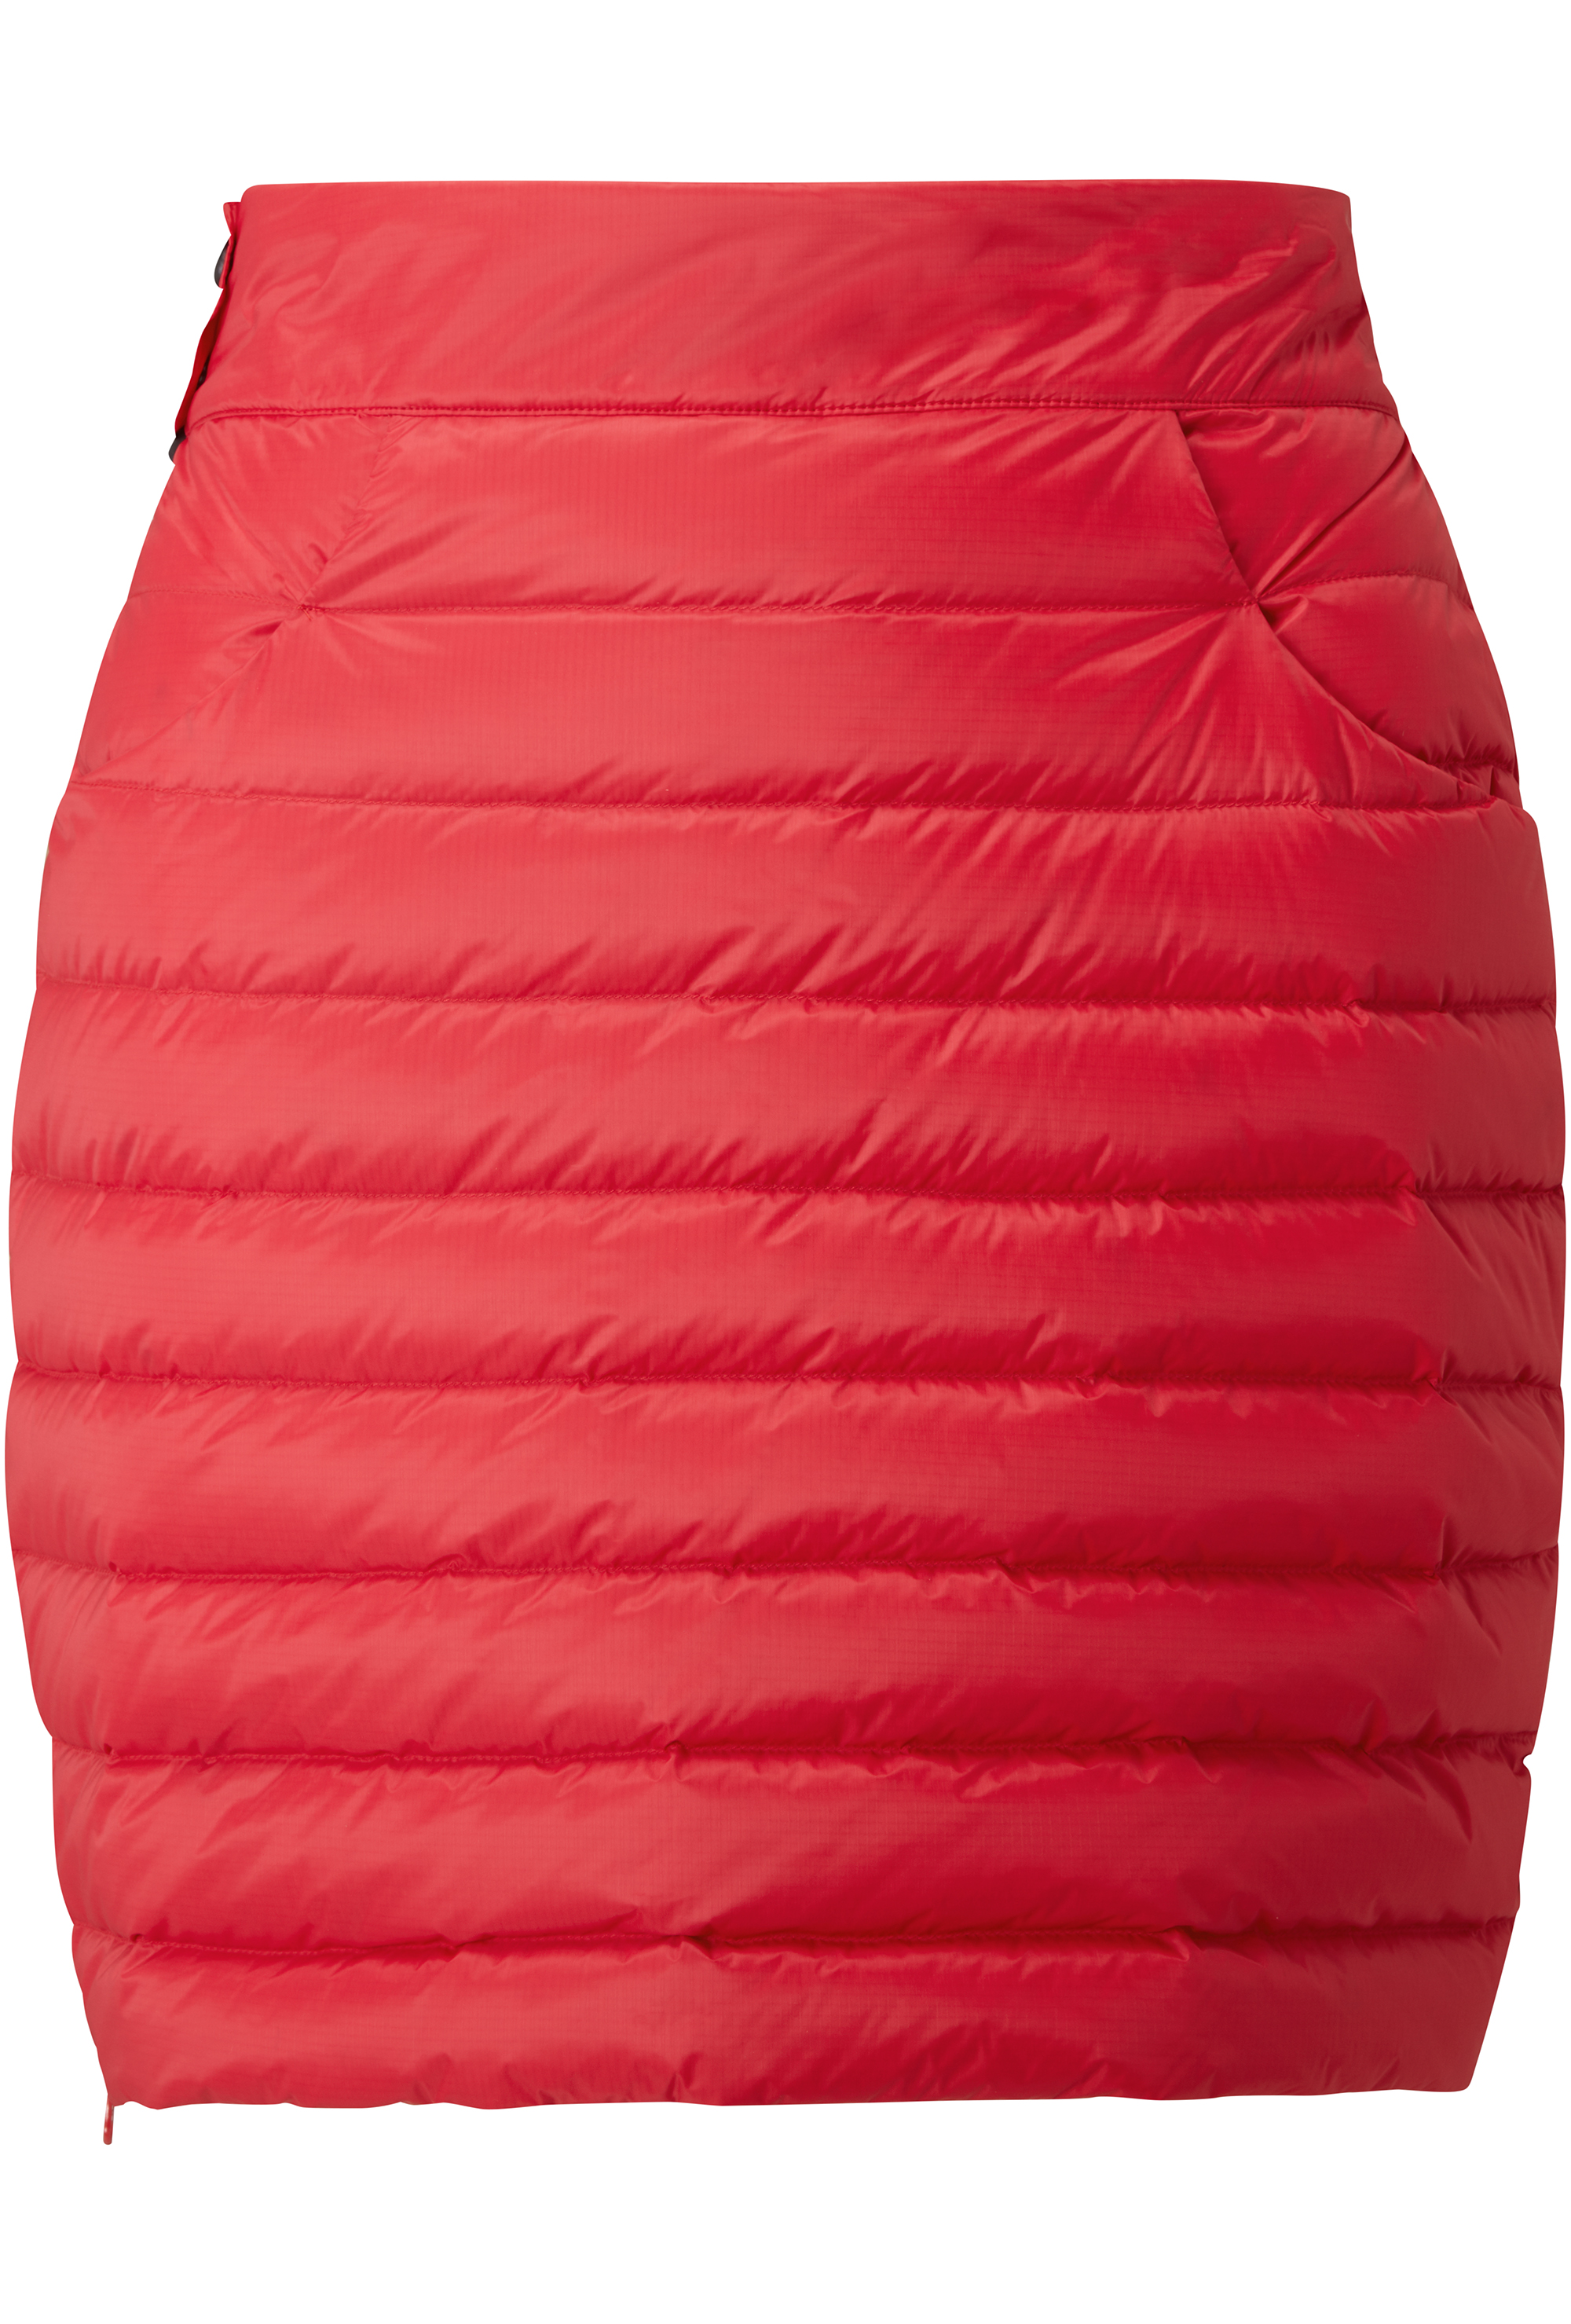 Dámská péřová sukně MOUNTAIN EQUIPMENT W's Frostline Skirt Capsicum Red M